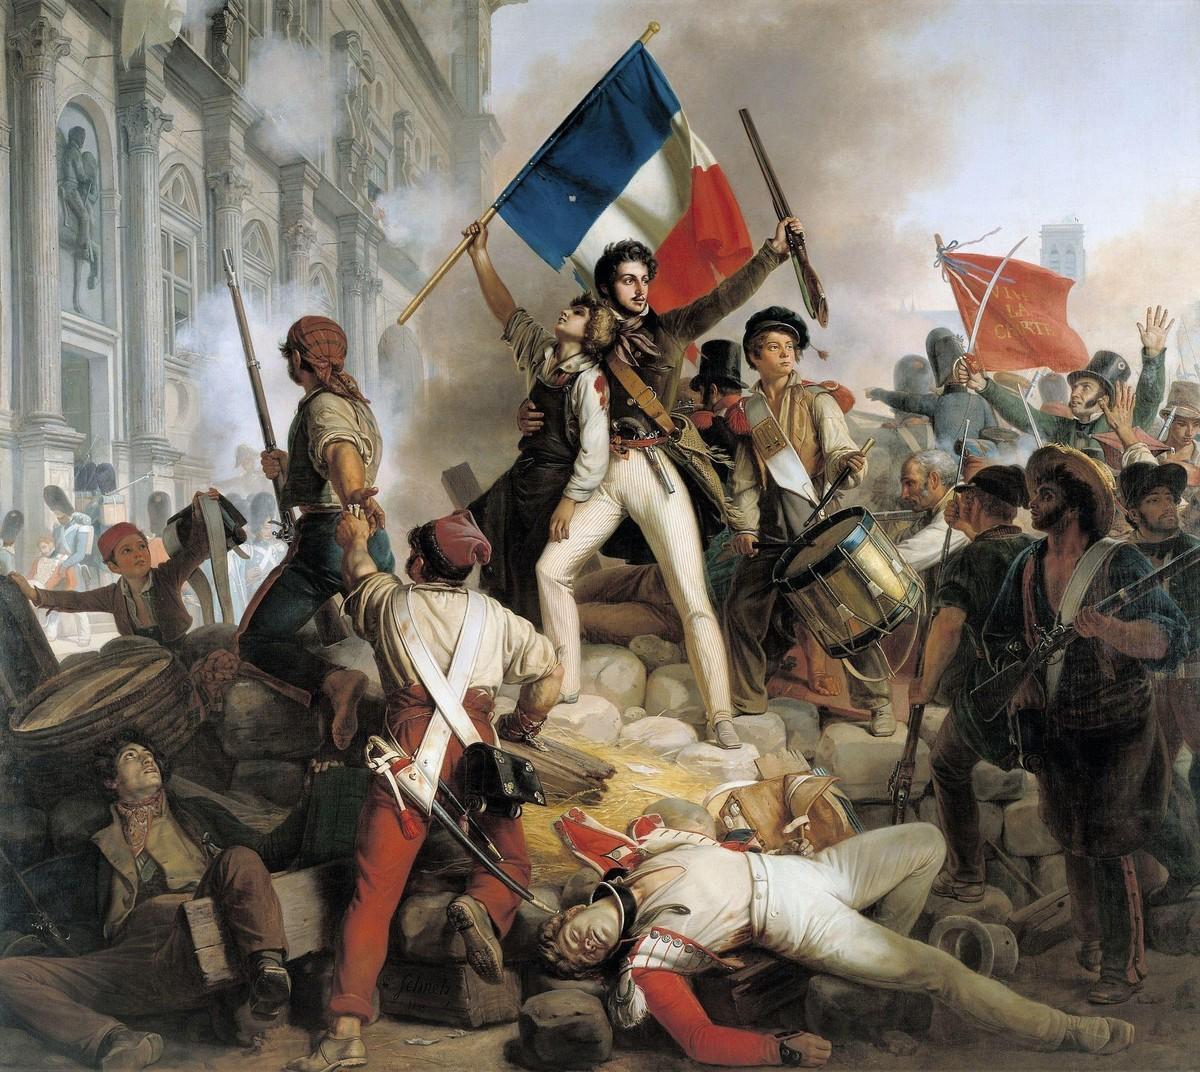 Jean-Victor Schnetz, Combats devant l'Hôtel de
Ville, 1833, huile sur toile (détail), 48 x 50 cm, musée du Petit Palais, Paris.